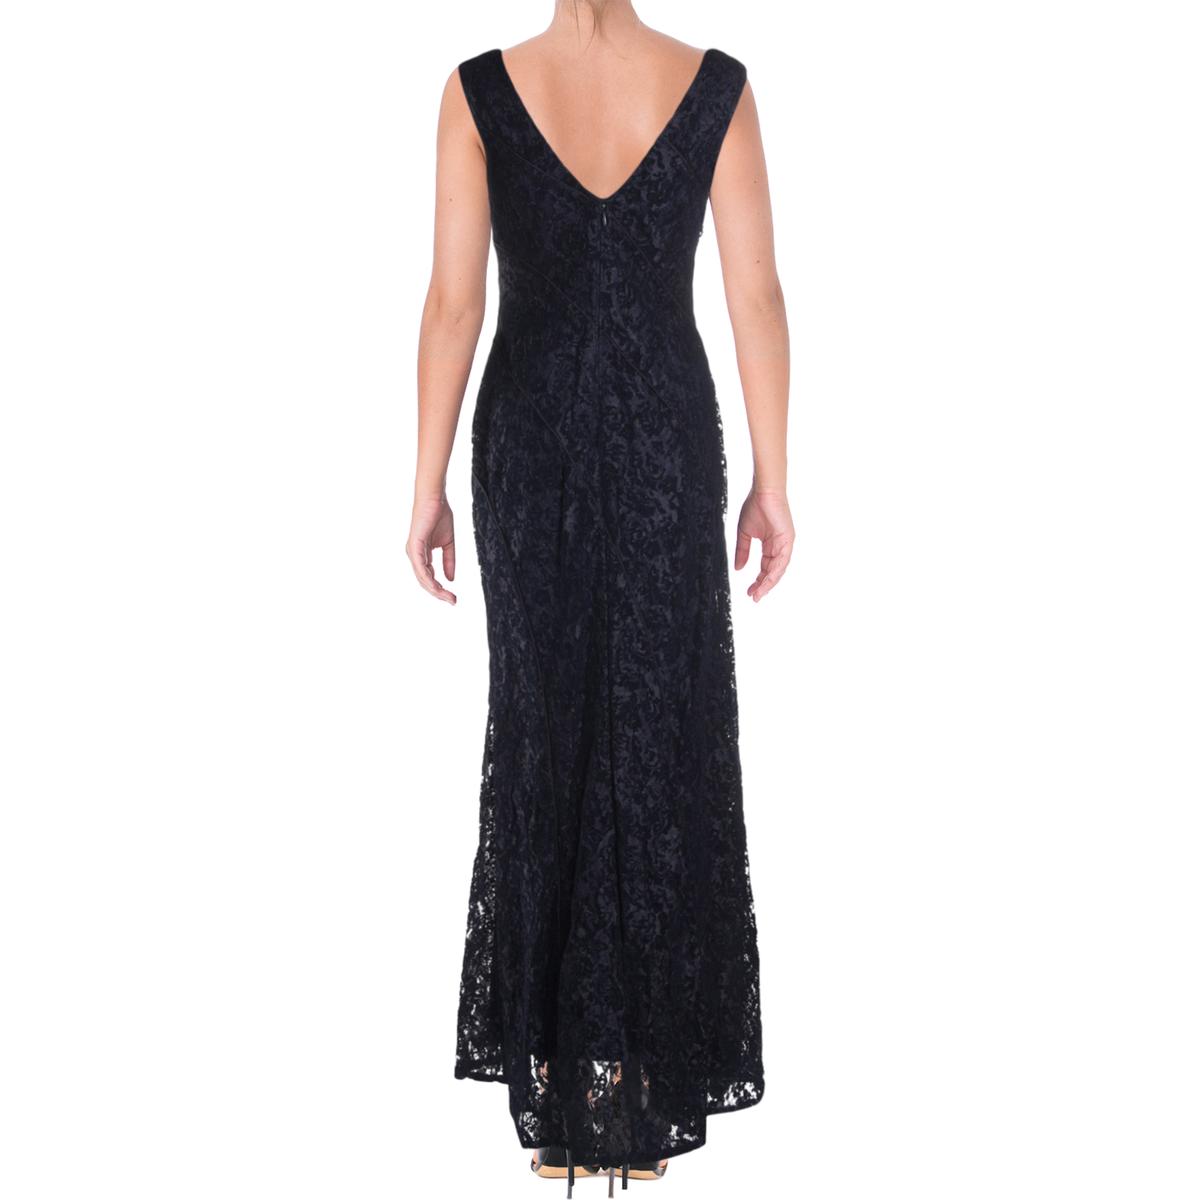 Aidan Mattox Womens Navy Lace Sleeveless Evening Dress Gown 0 BHFO 5257